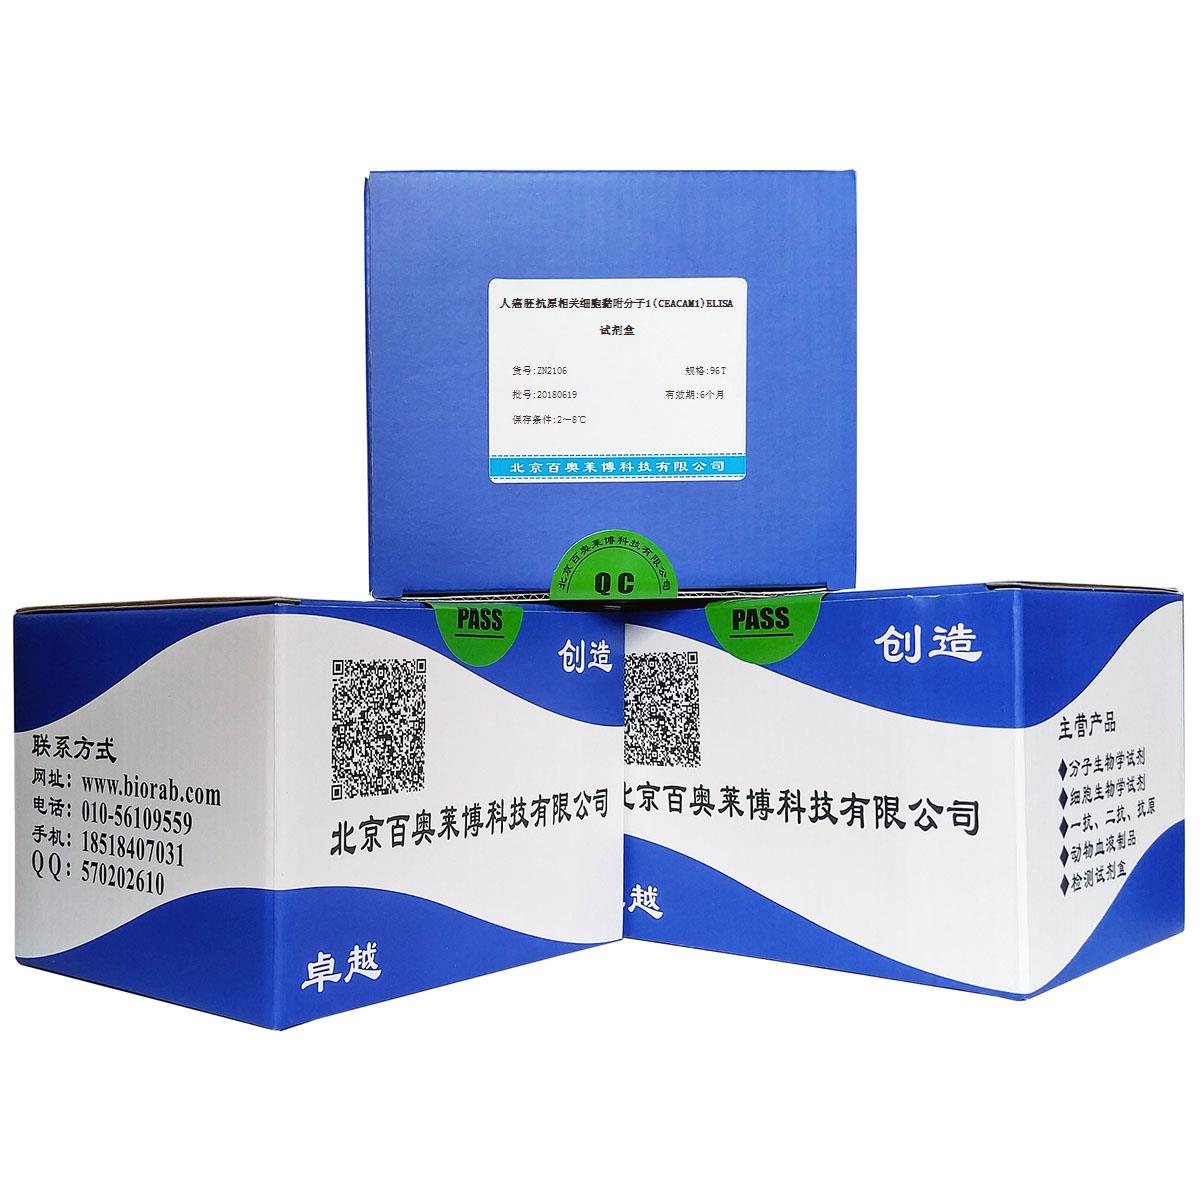 北京现货人癌胚抗原相关细胞黏附分子1(CEACAM1)ELISA试剂盒销售